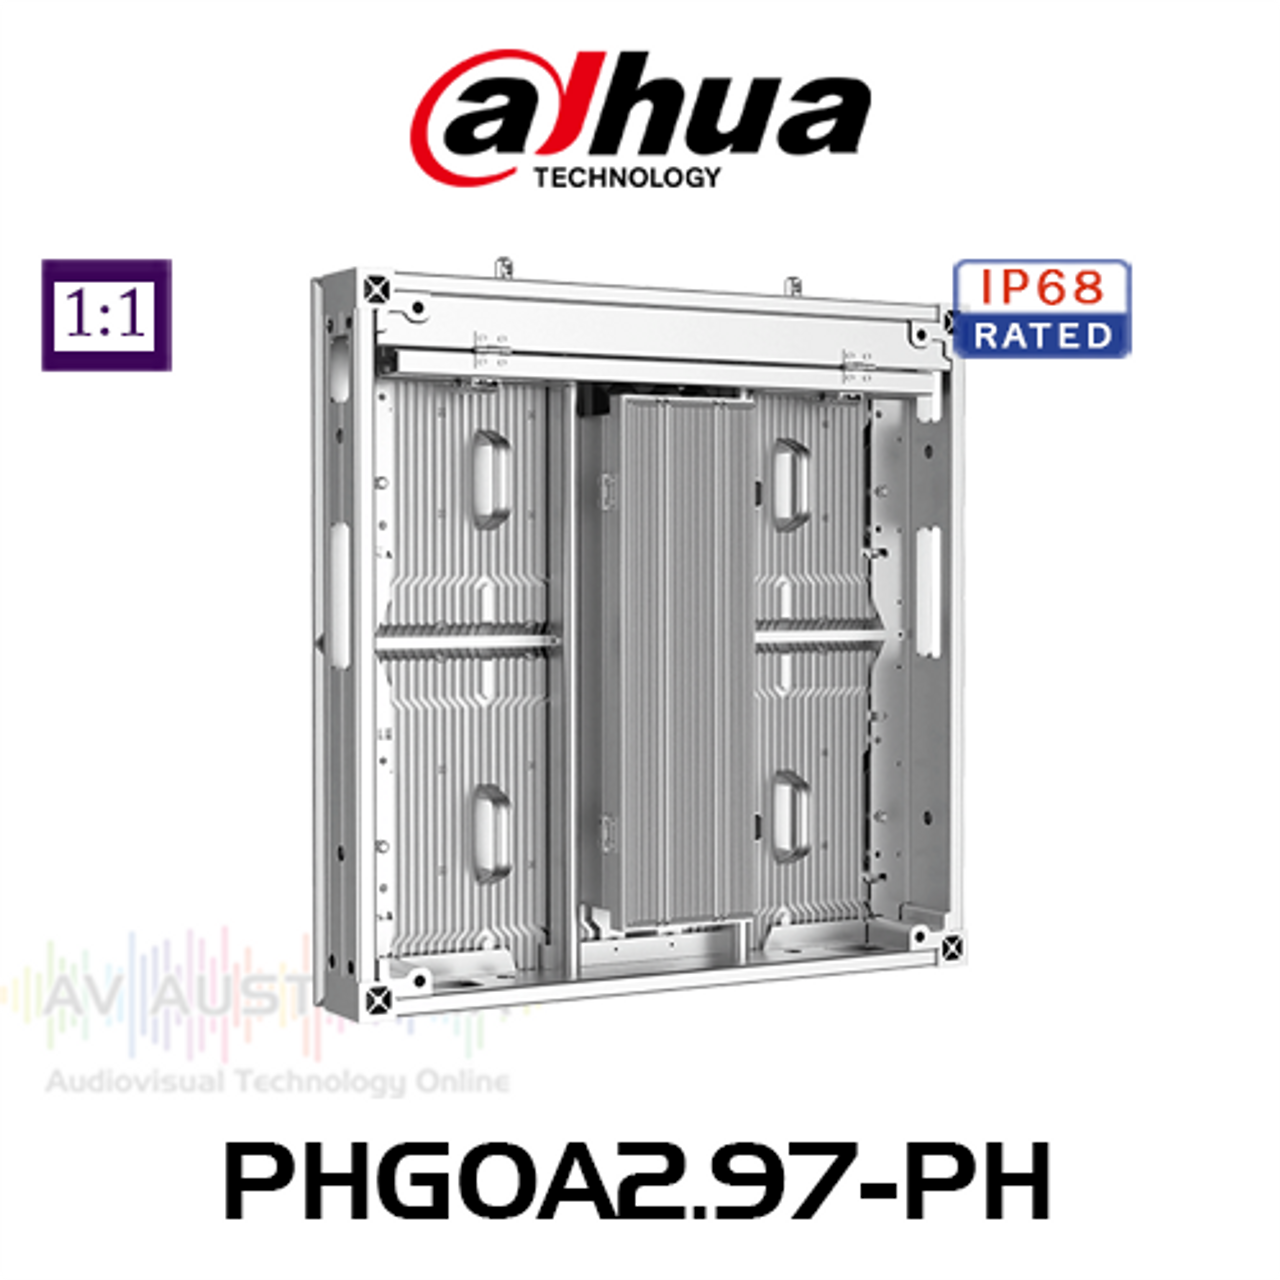 Dahua PHGOA2.97-PH 2.9mm 4500 Nits 1:1 Outdoor Fixed LED Module